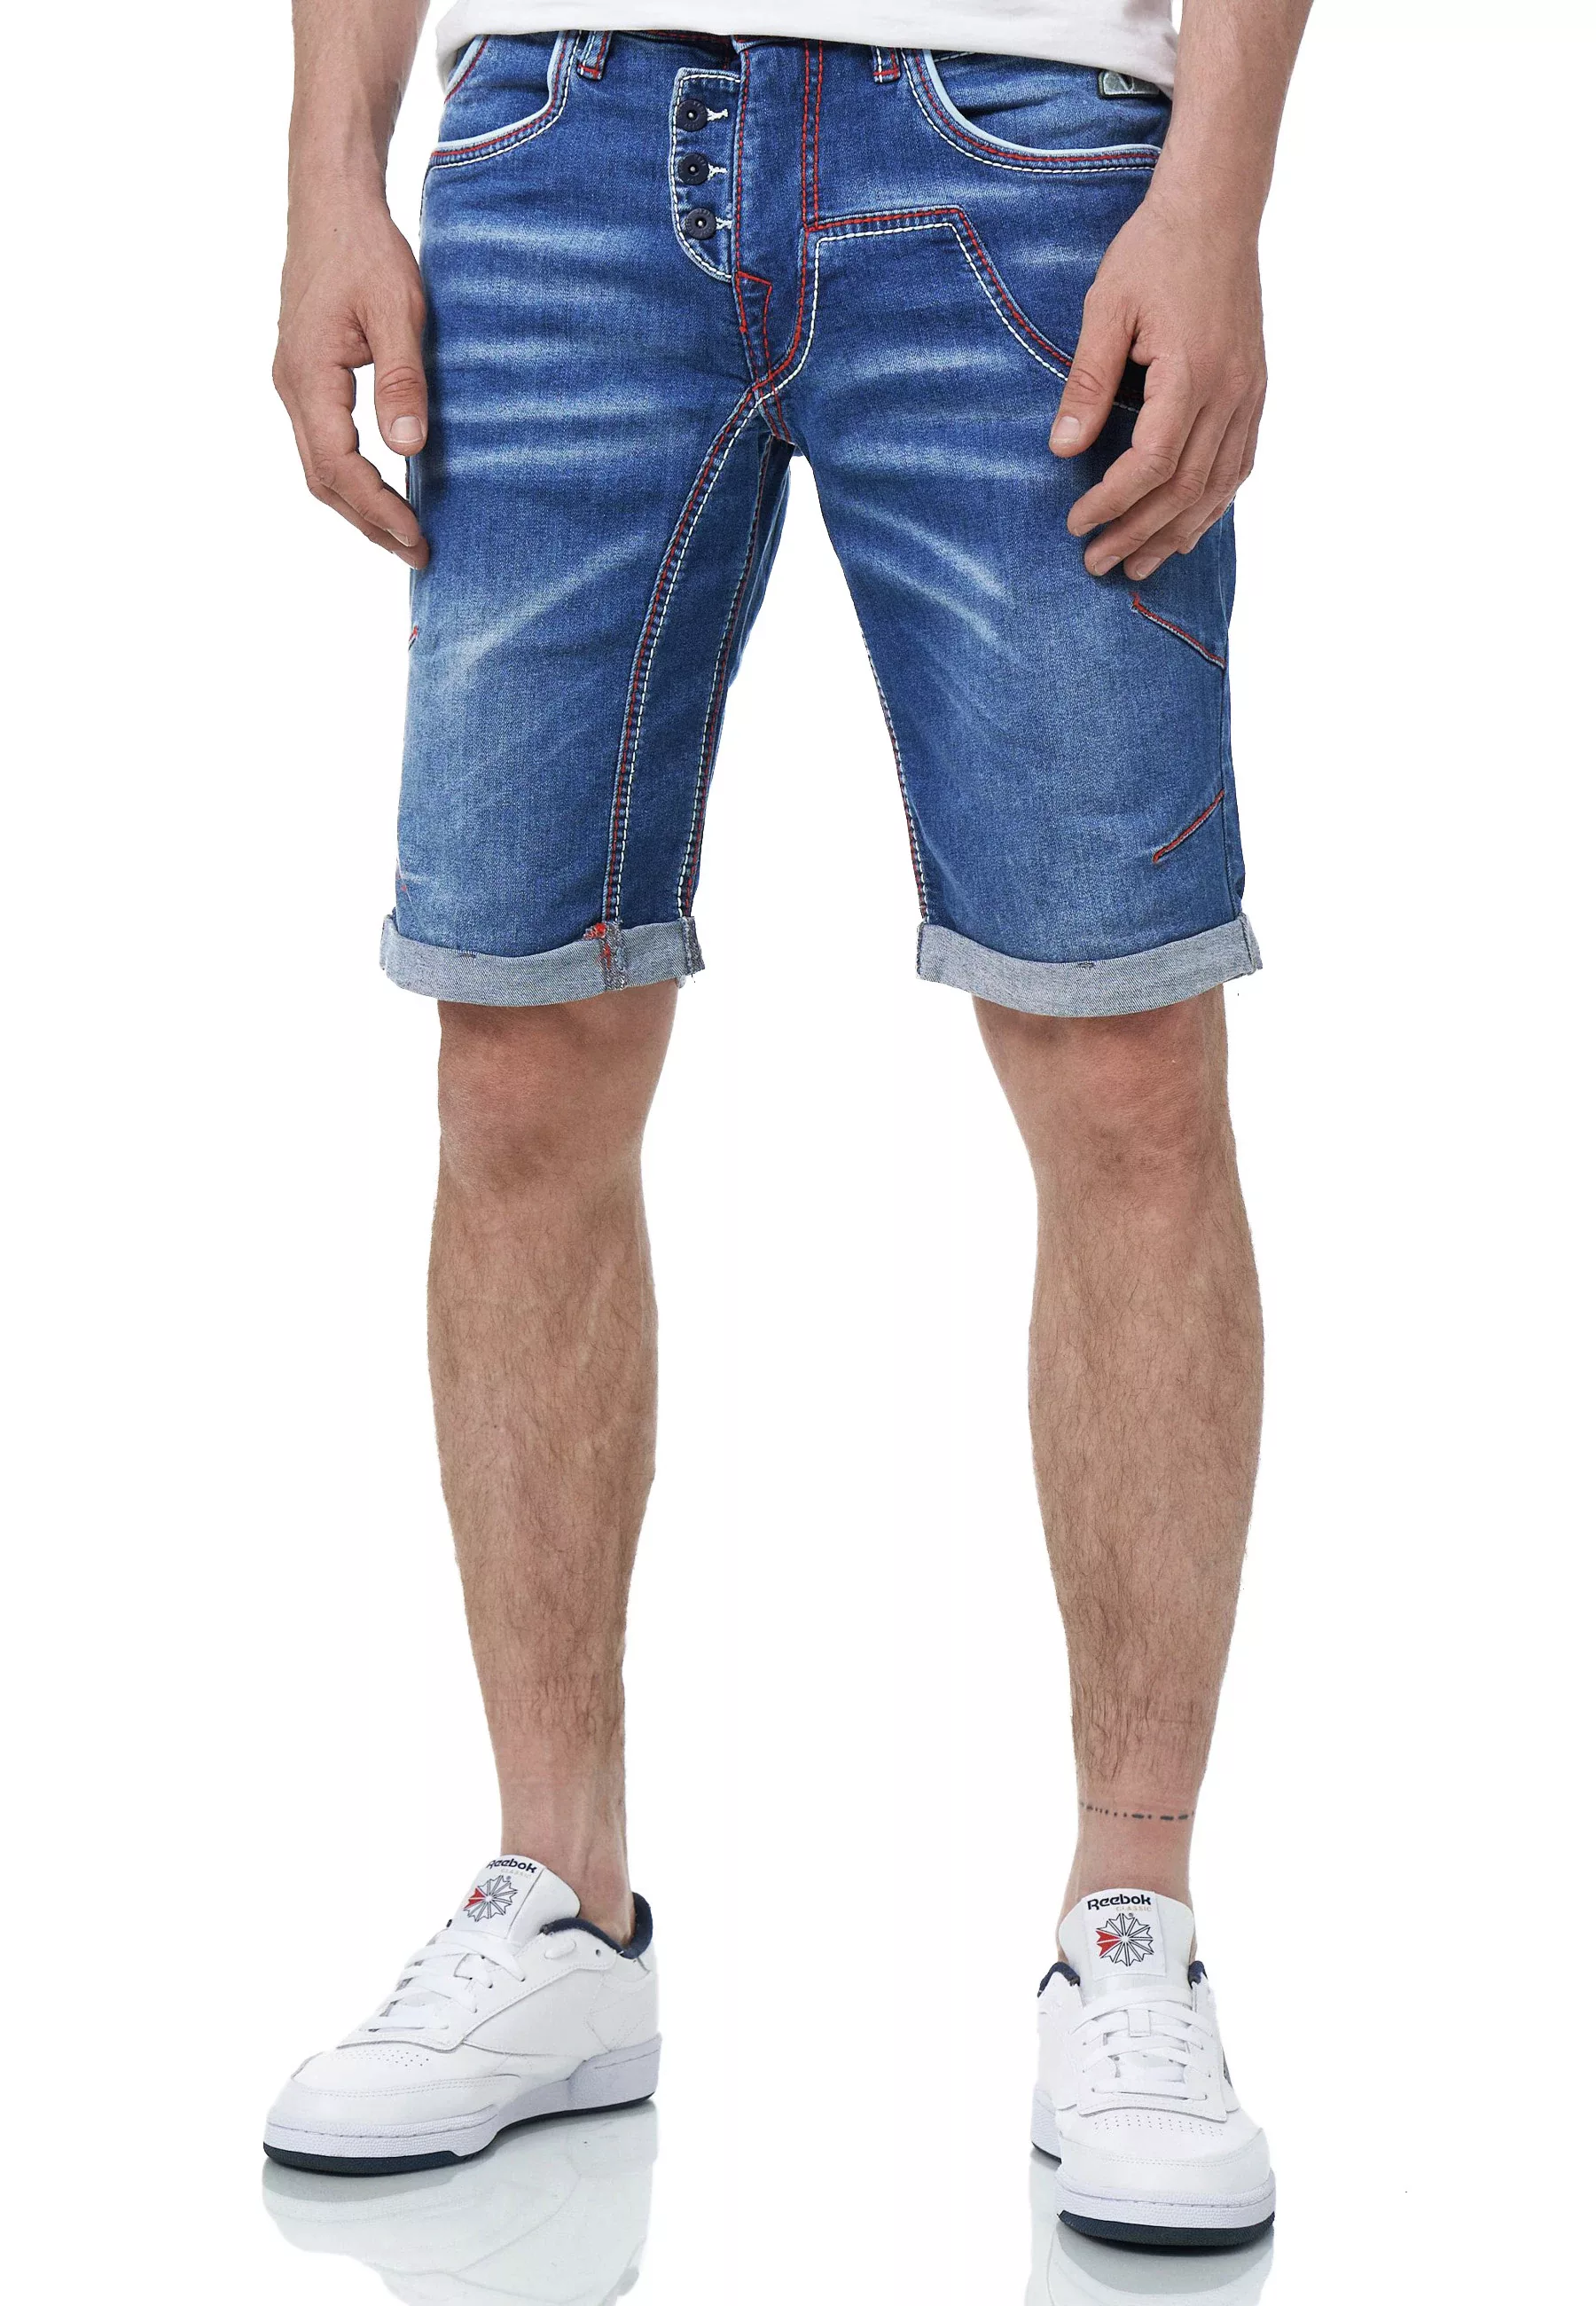 Rusty Neal Shorts "Ruben", in tollem Jeans-Look günstig online kaufen